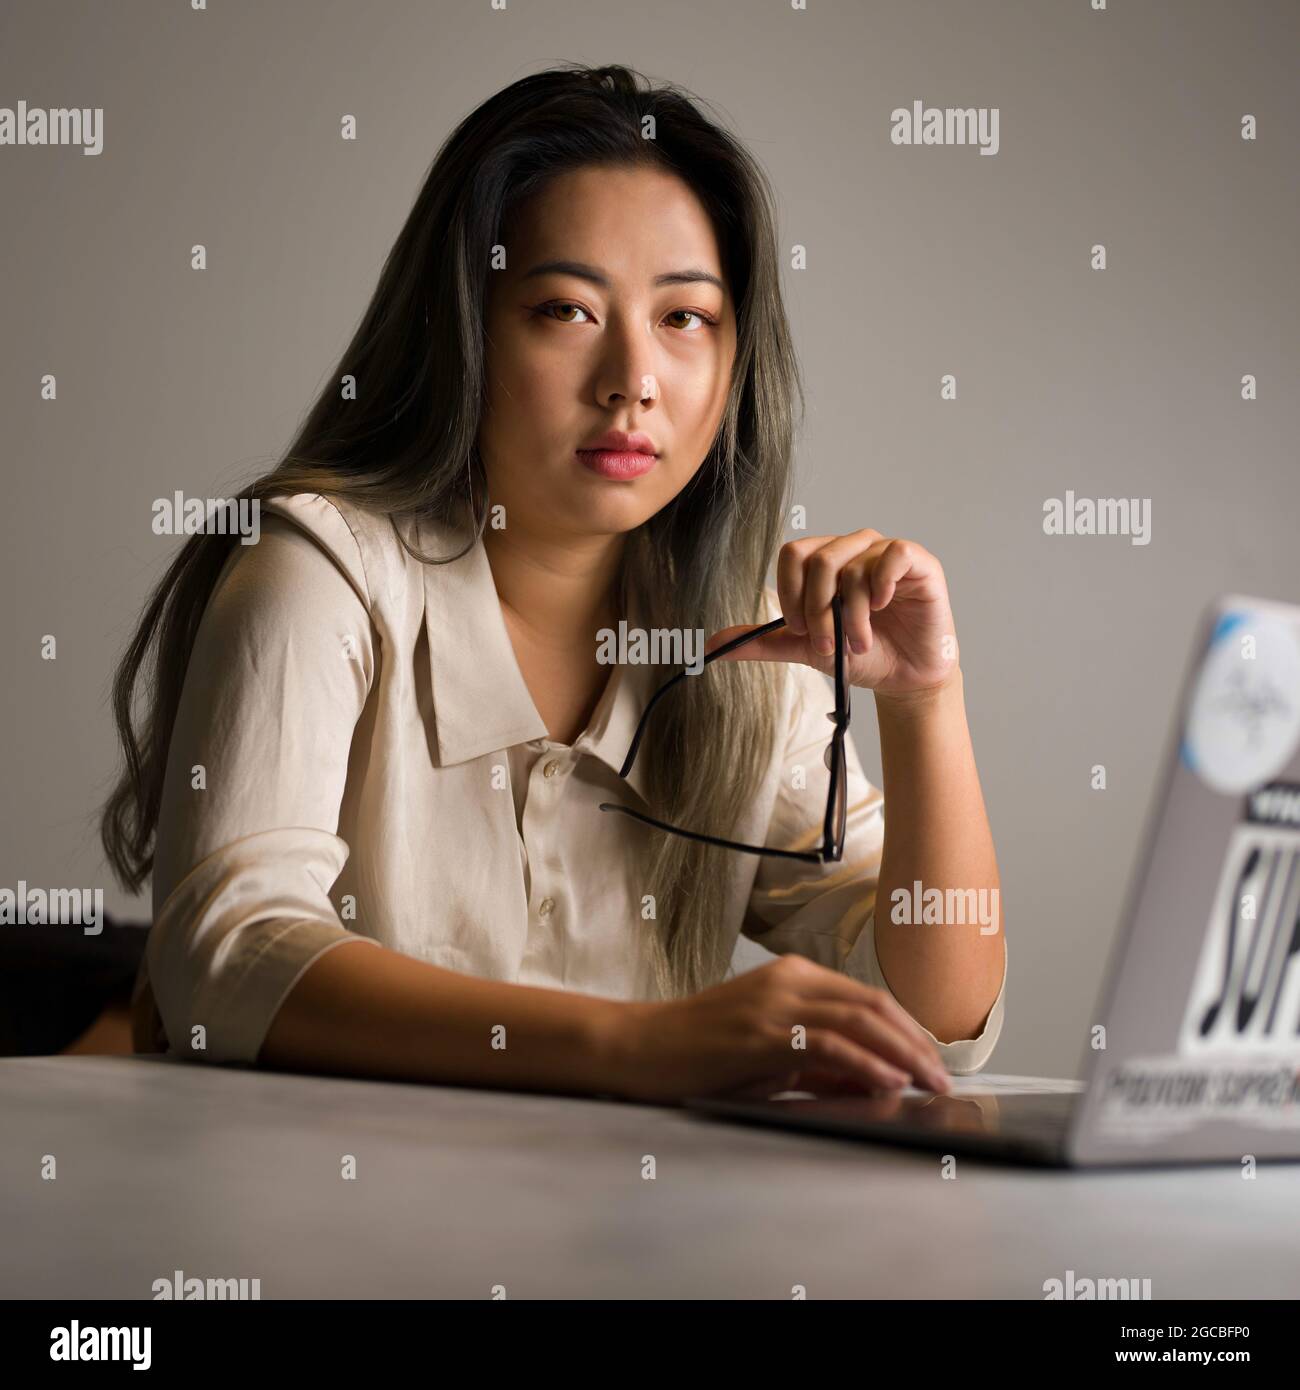 Junge asiatische weibliche authentische Datenwissenschaftlerin, die an einem Analyseproblem arbeitet Stockfoto